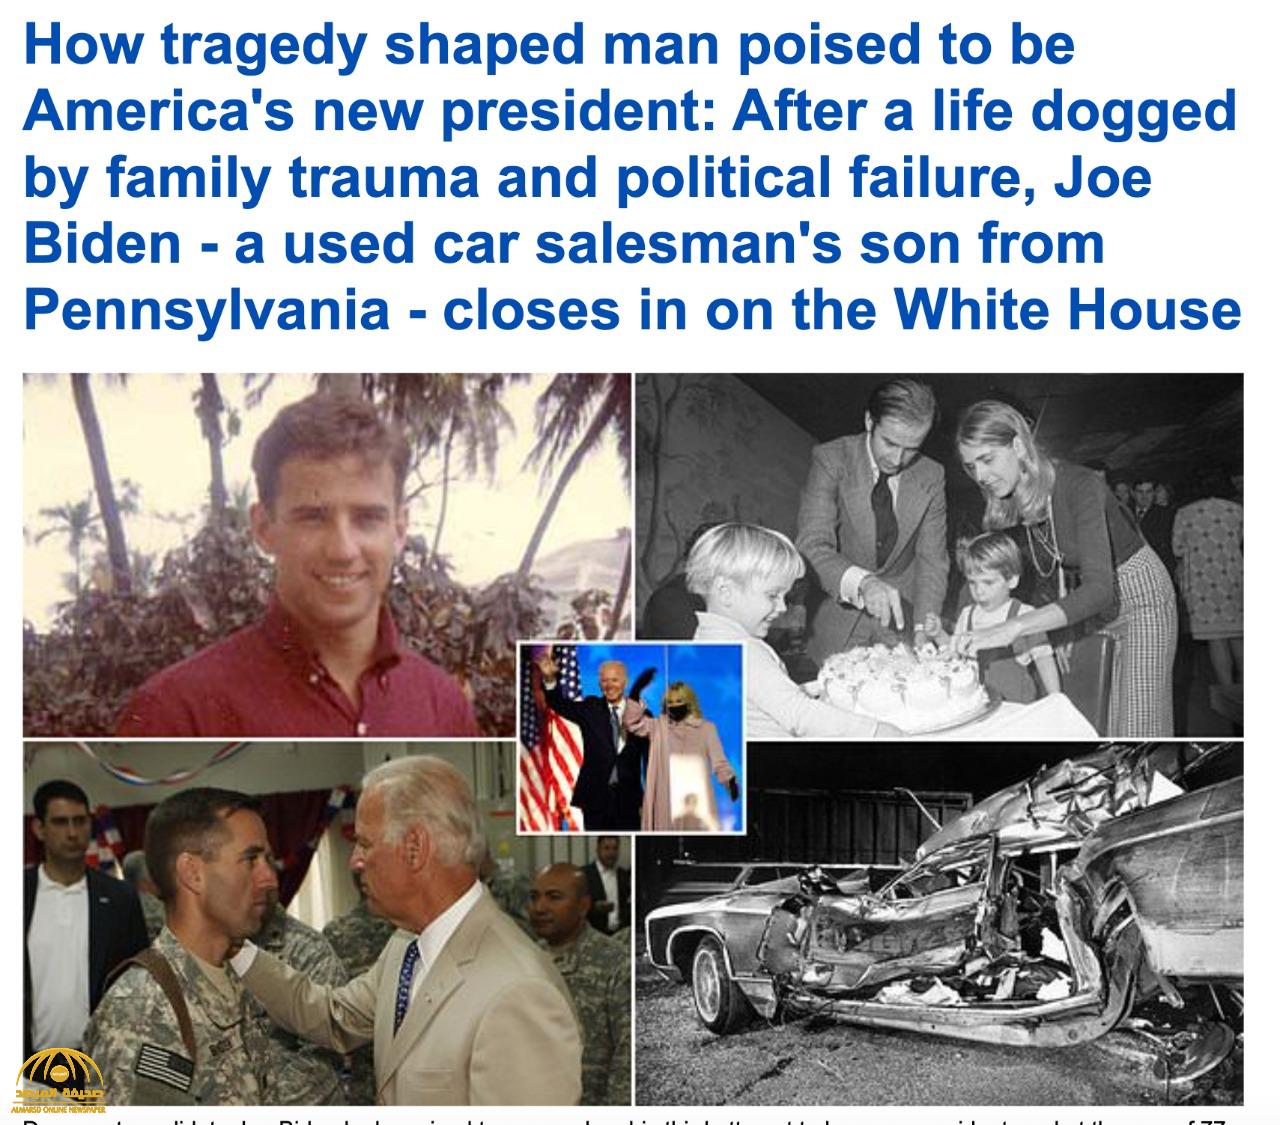 قبل خطوات من دخول "البيت الأبيض".. معلومات عن "جو بايدن" والحادث "المأسوي" في حياته-صور